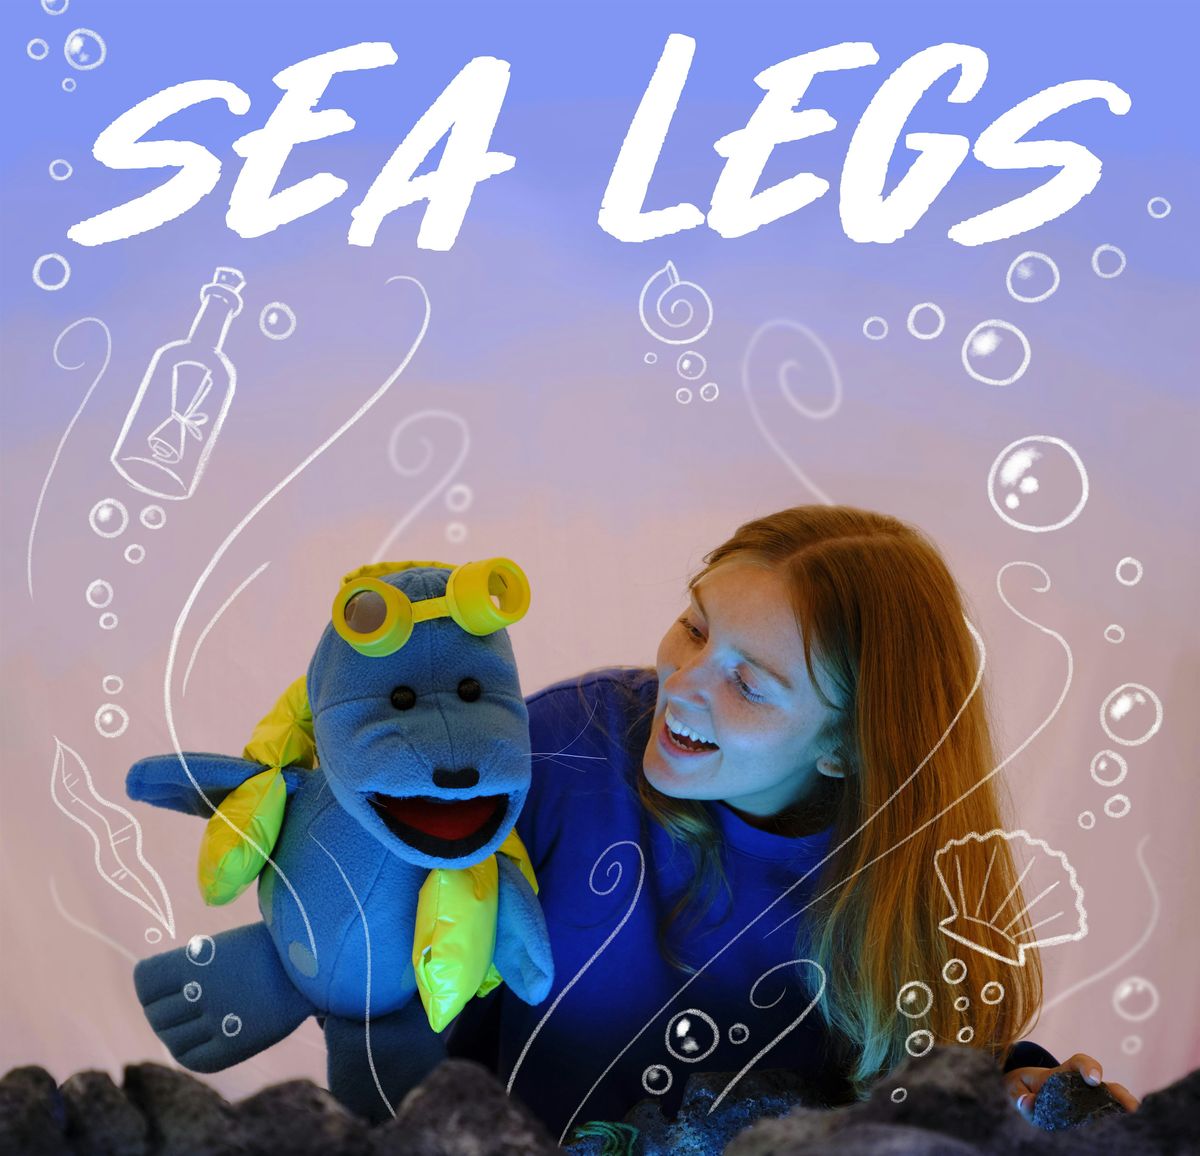 Sea Legs